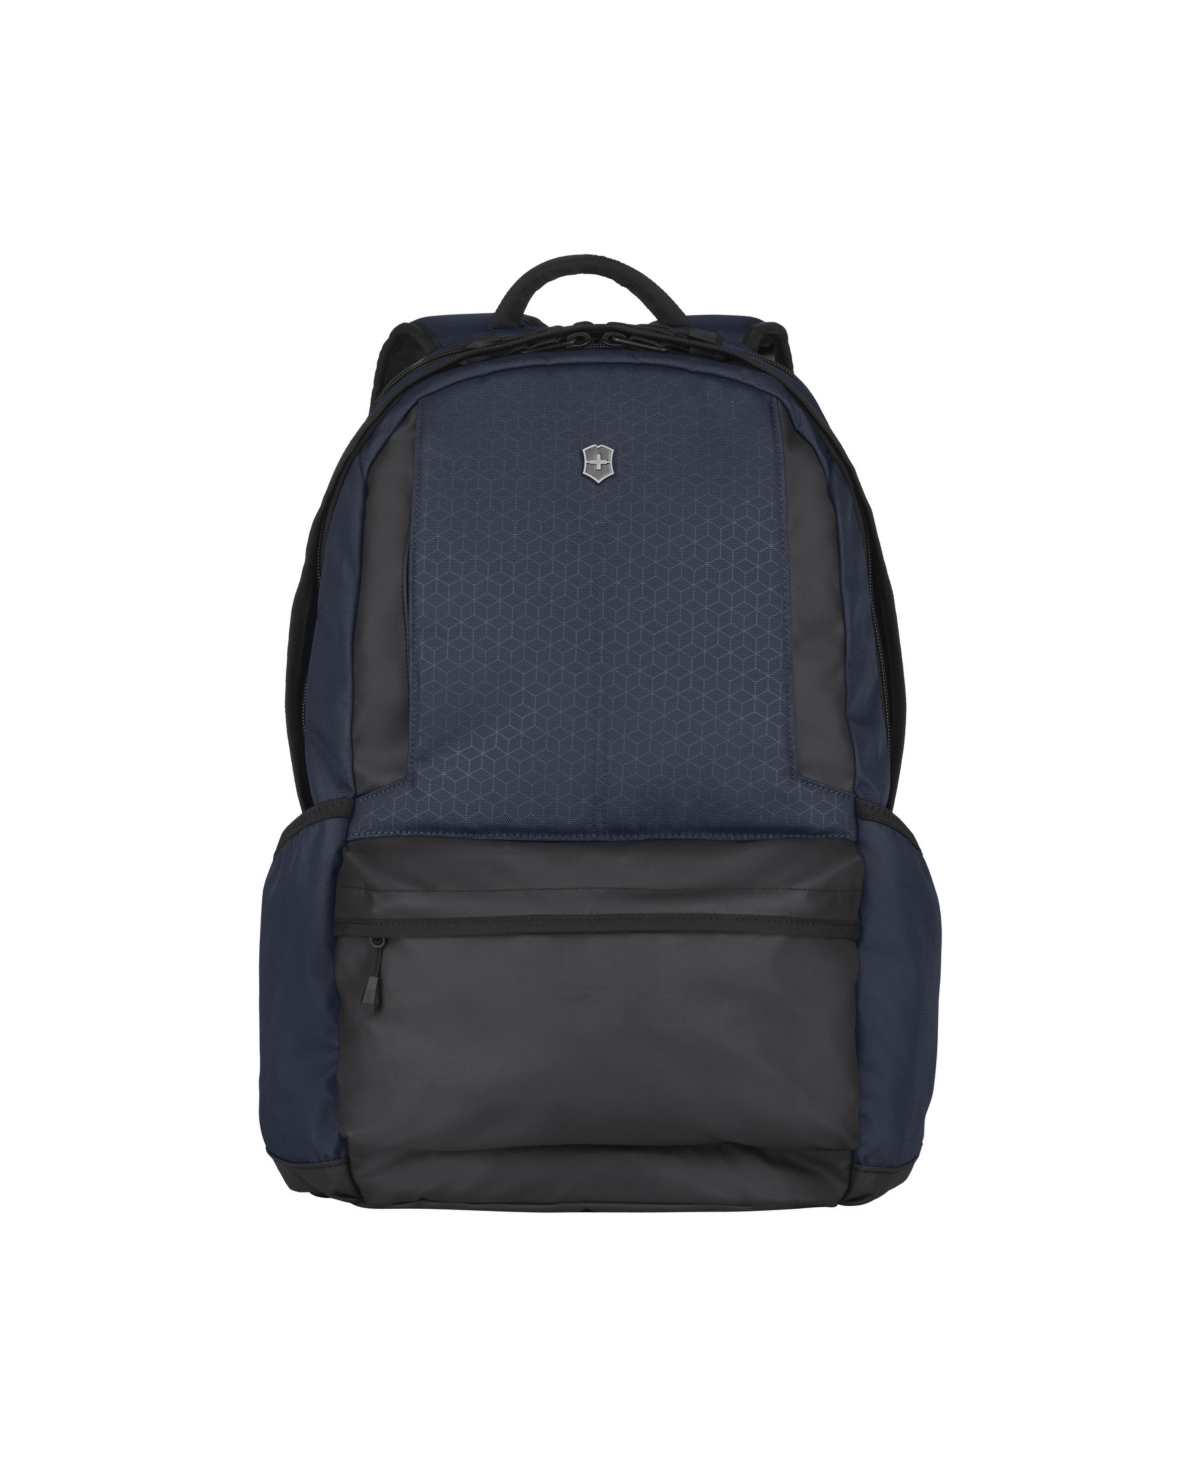 Altmont Original Laptop Backpack - Blue